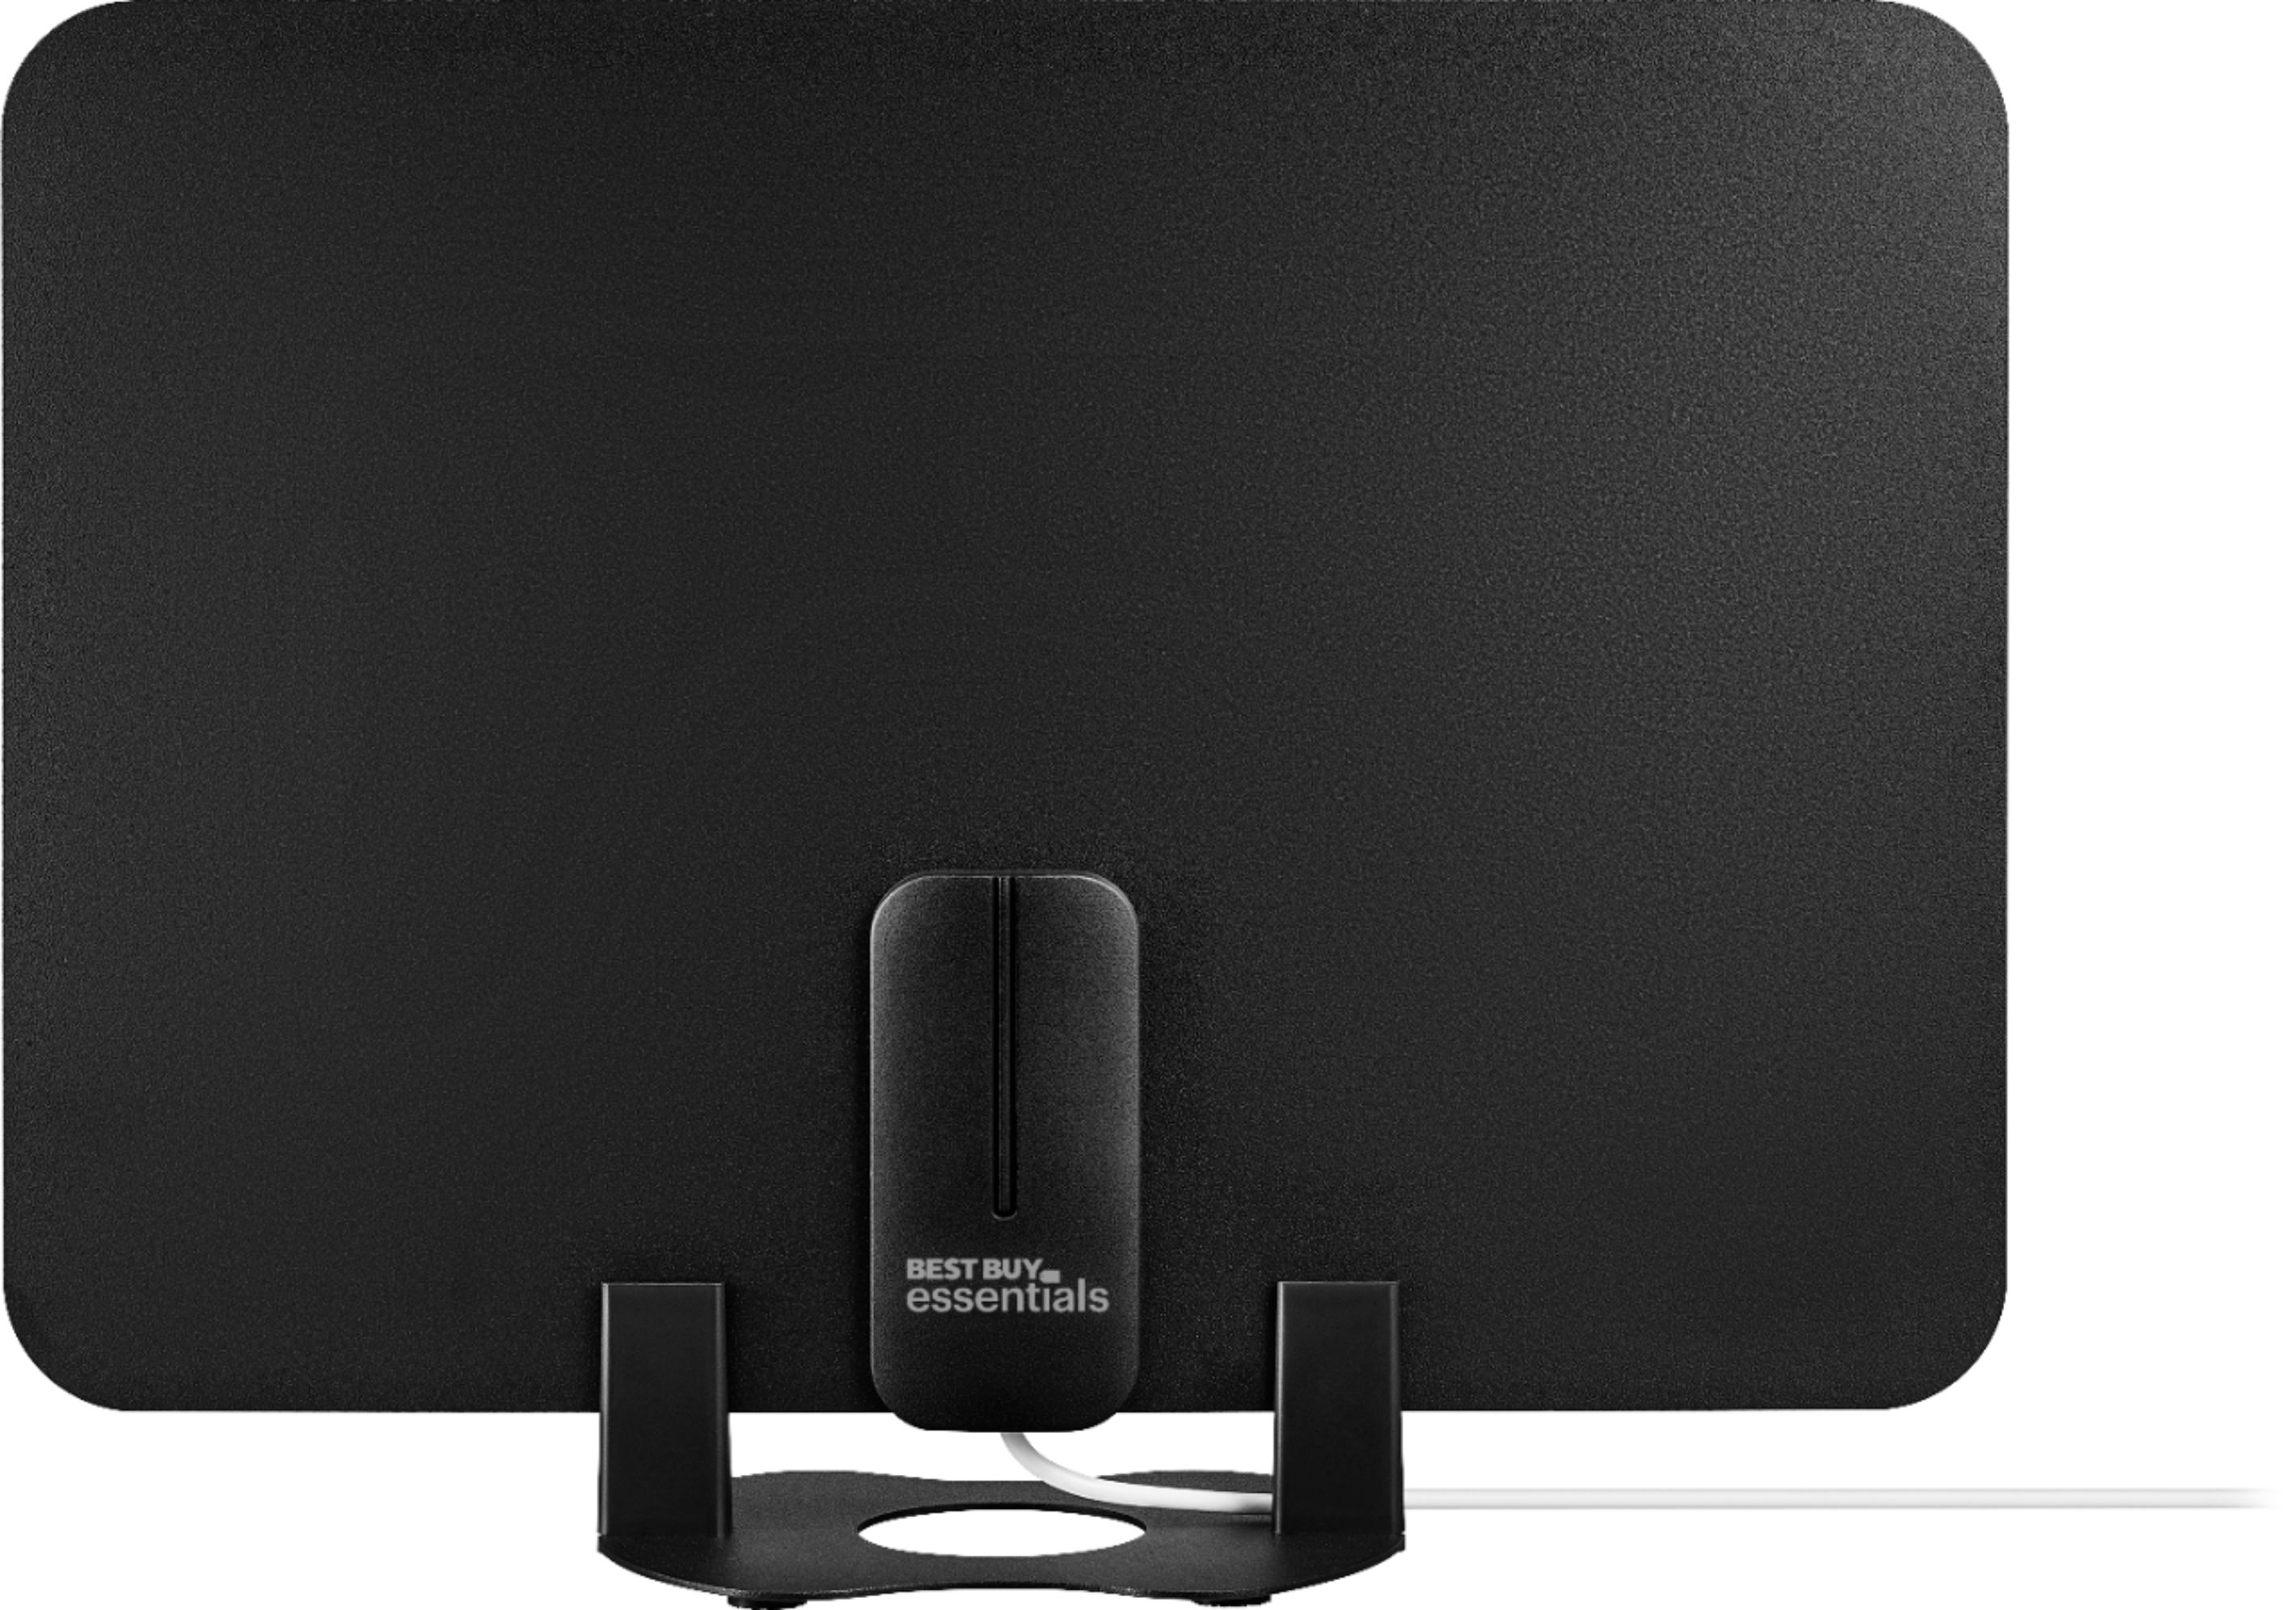 Best Buy essentials™ - Amplified Ultra-Thin Film Indoor HDTV Antenna - Black/White